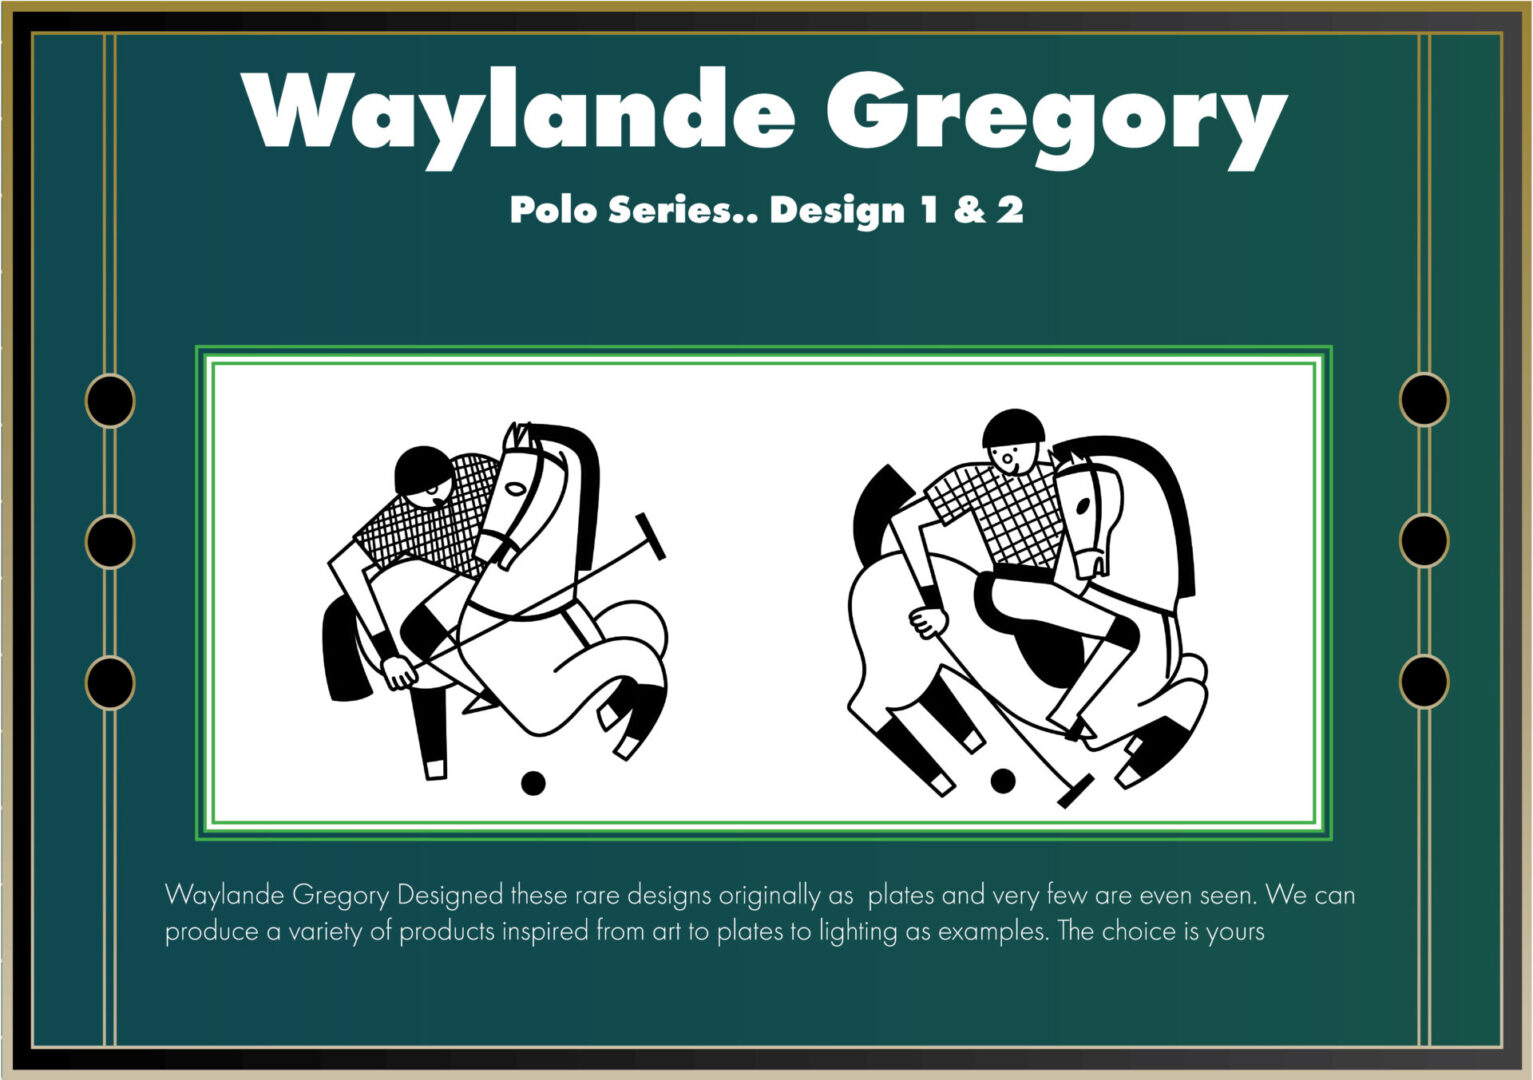 Polo Series Designs by Waylande Desantis Gregory